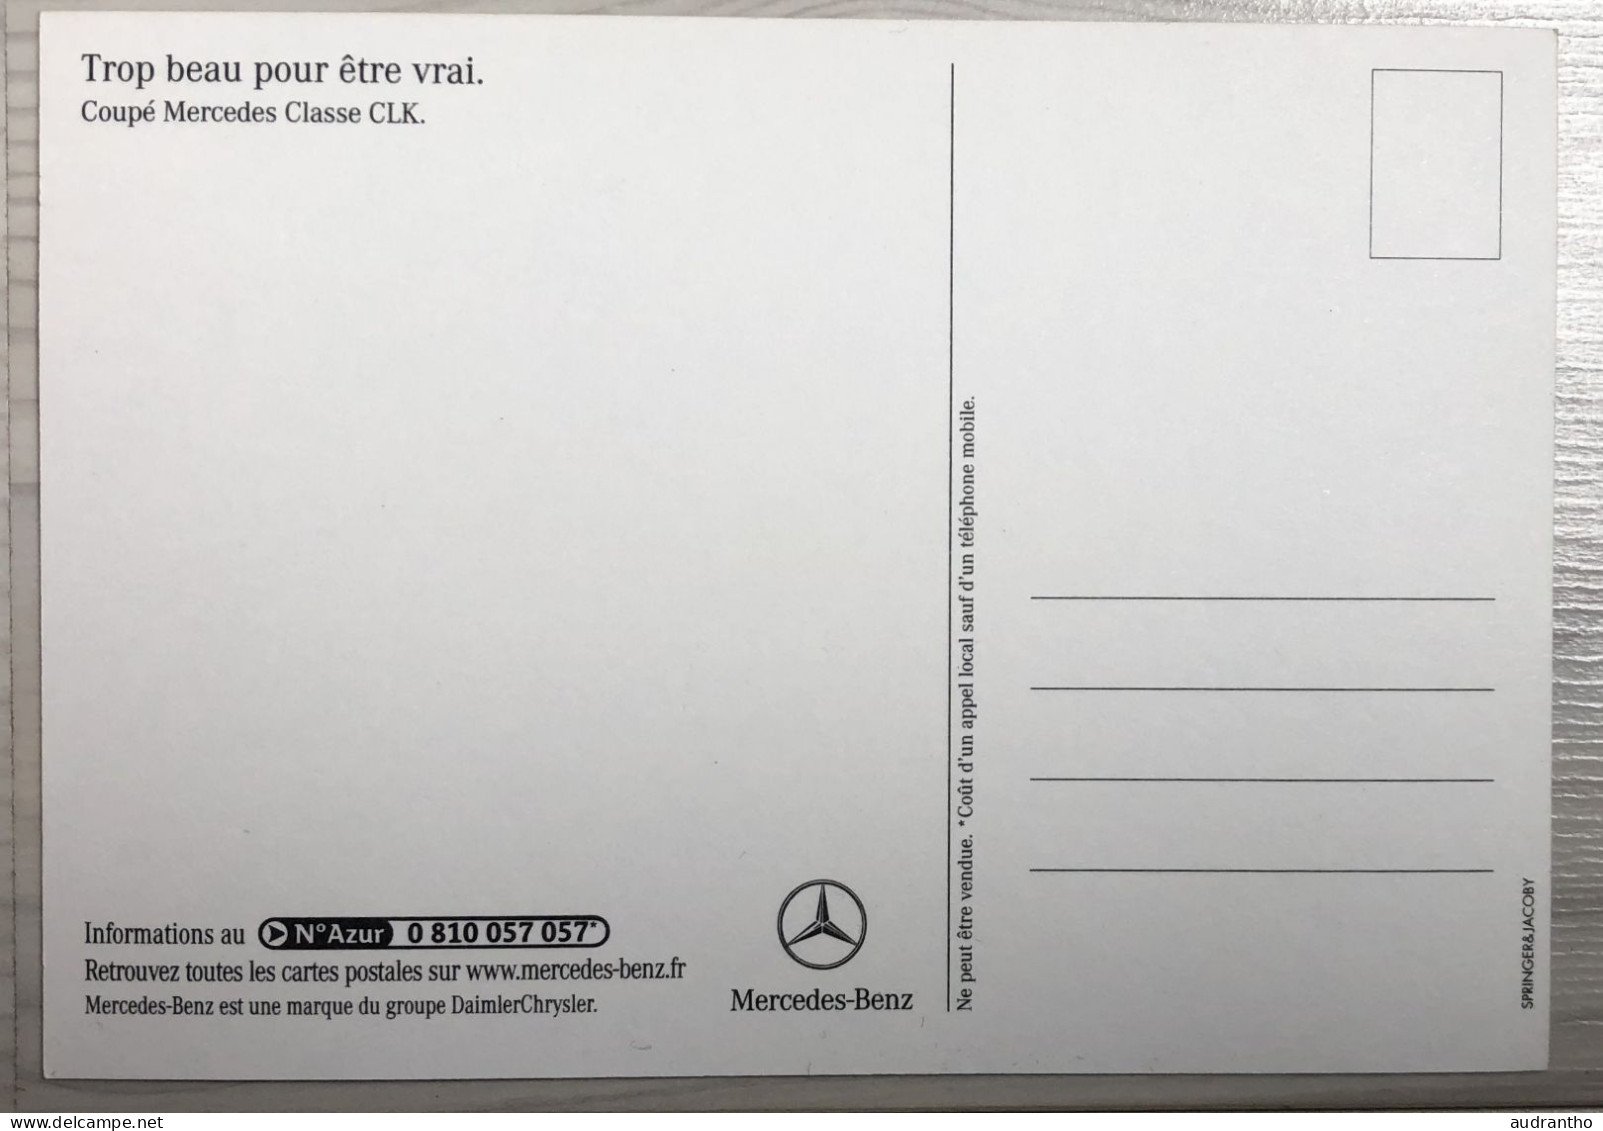 1 carte publicitaire à choisir - automobile MERCEDES-BENZ